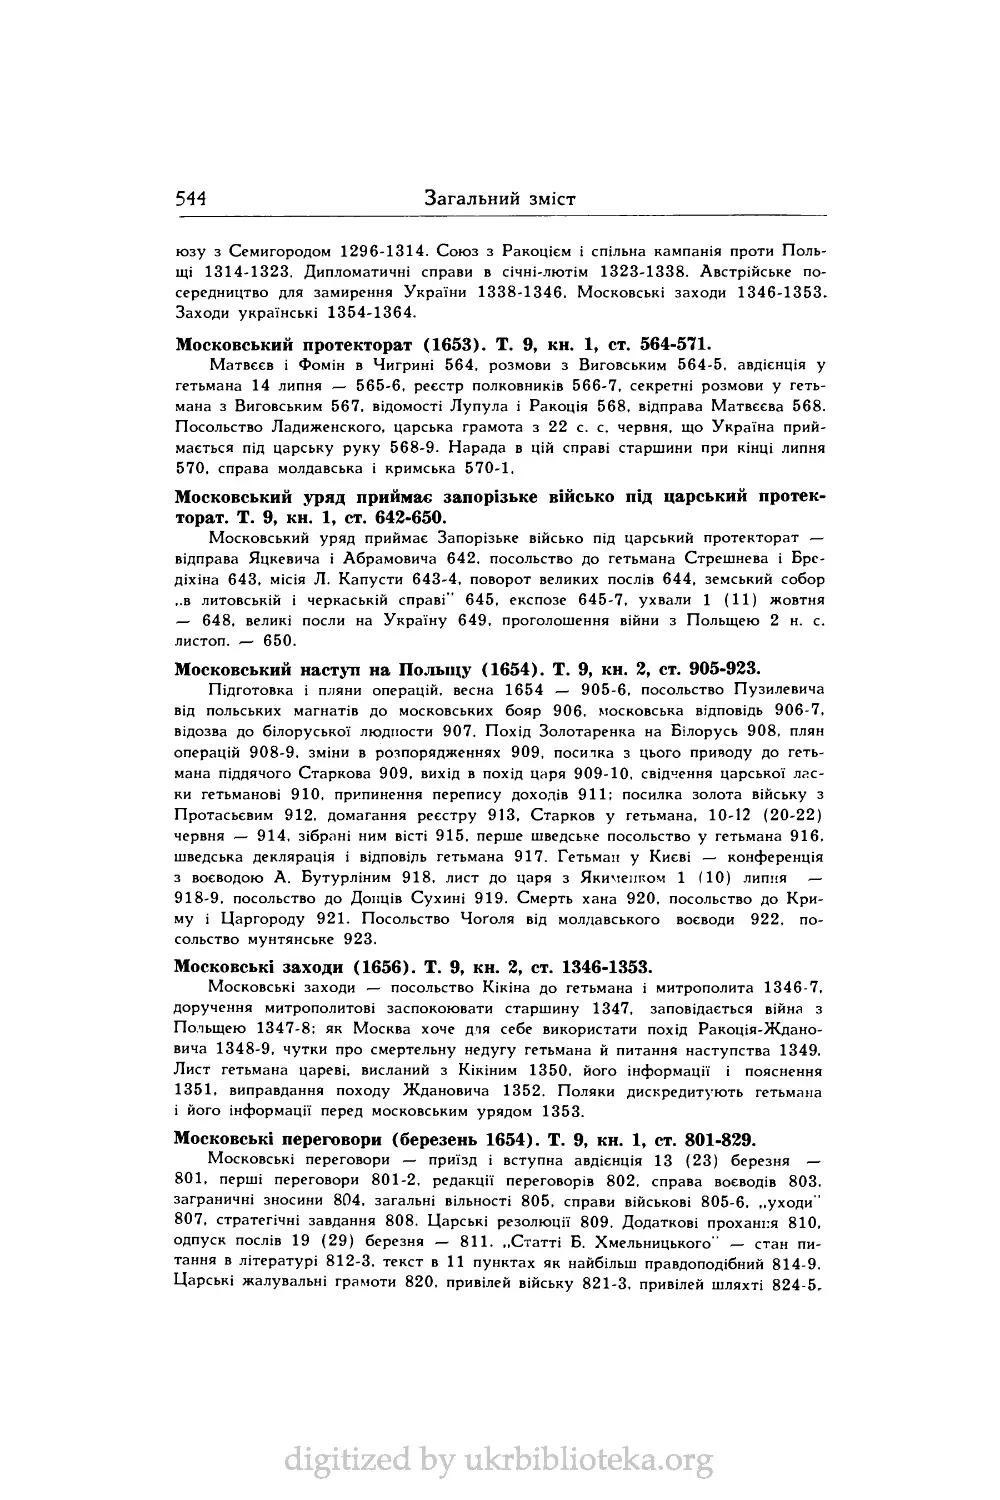 Московський уряд приймає запорізьке військо під царський протекторат. Т. 9, кн. 1, ст. 642-650.